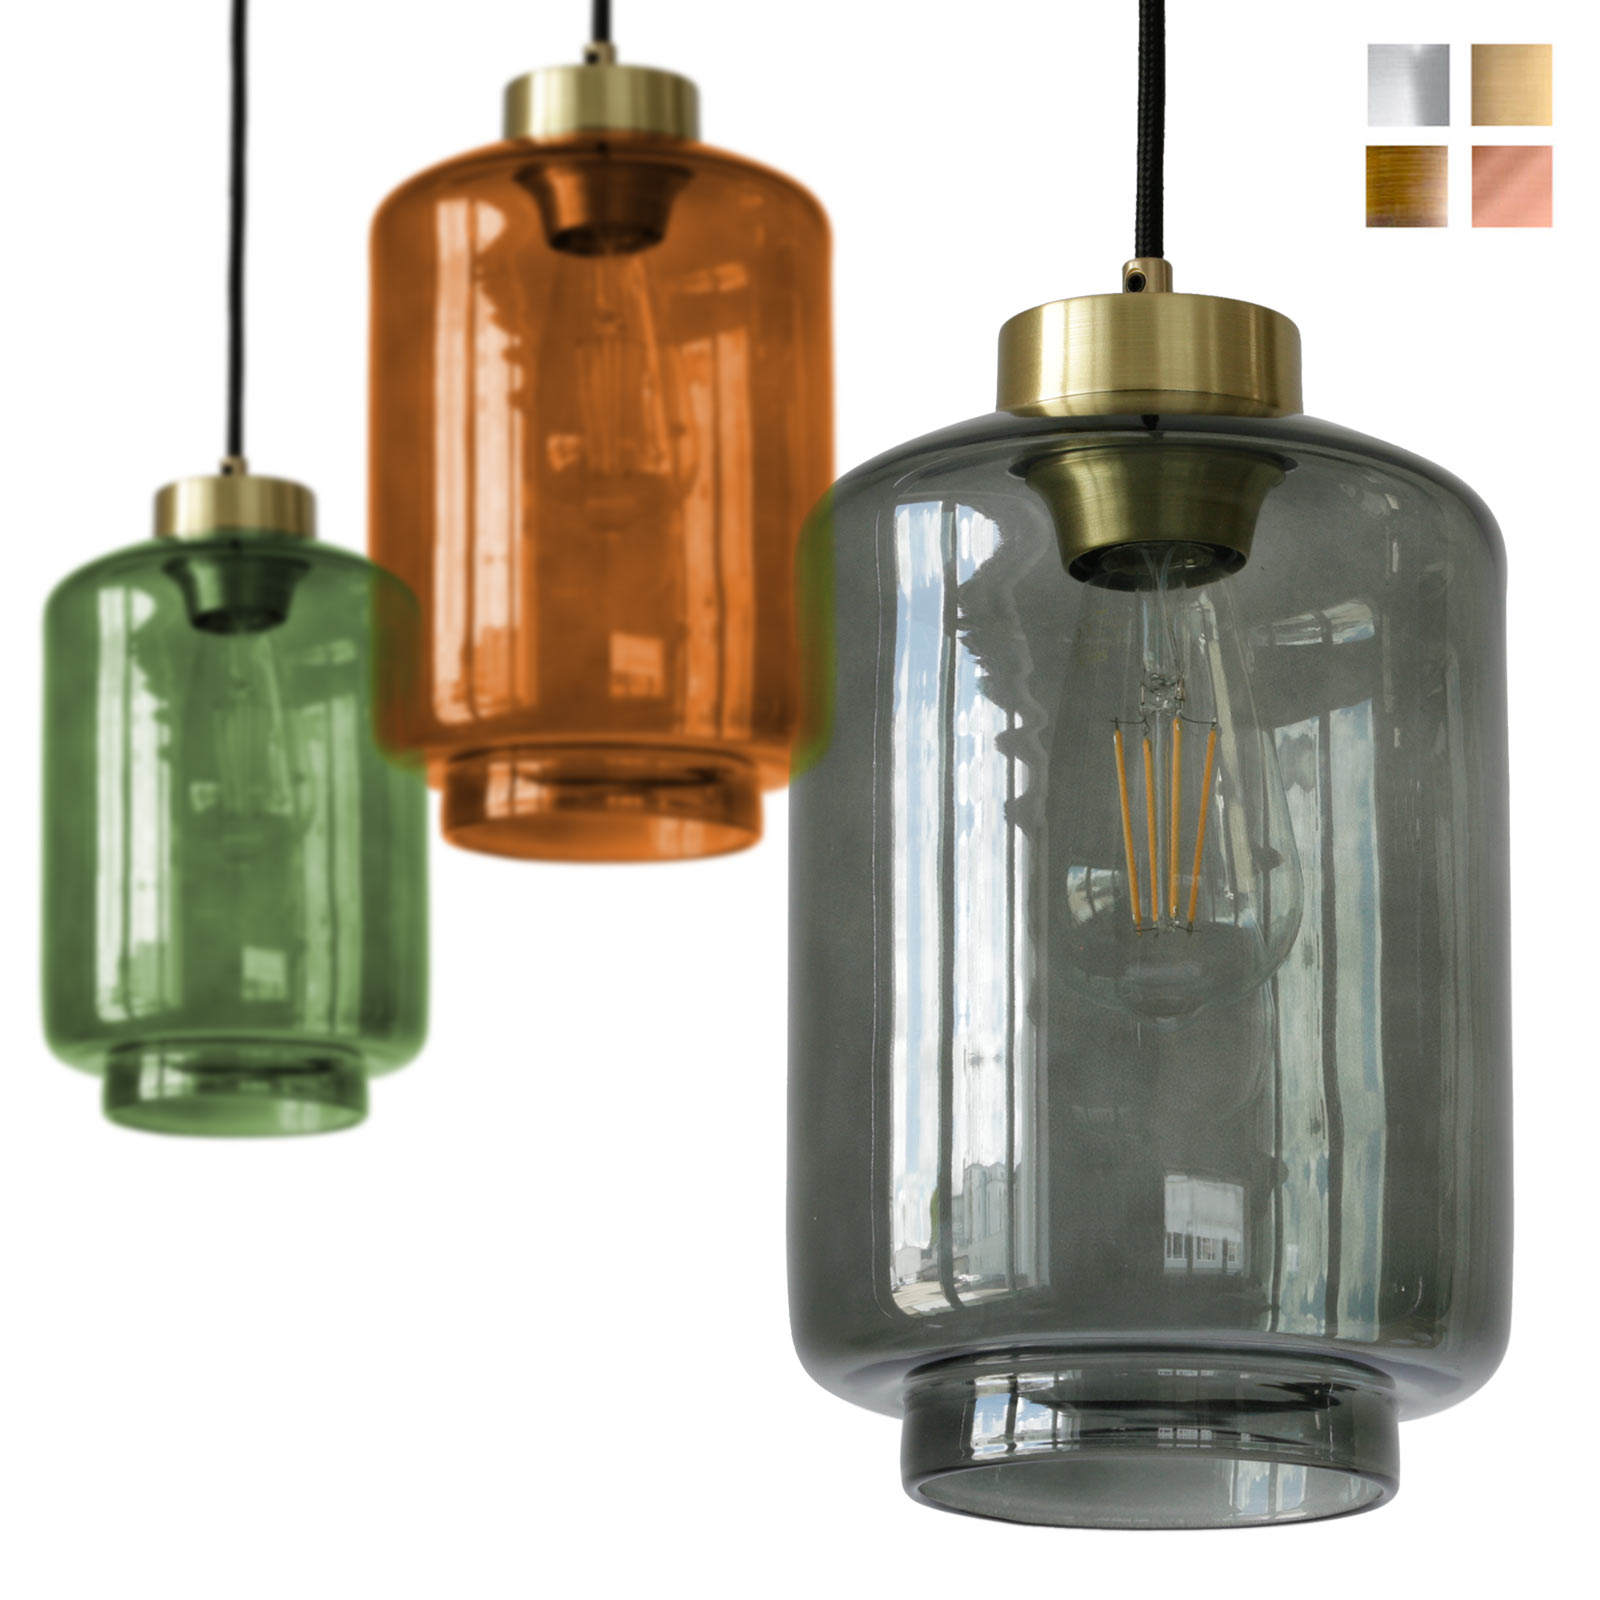 Schlanke Glas-Pendelleuchte in verschiedenen Glasfarben VISAY: Eine schöne, schlanke Glas-Hängeleuchte, in diversen Glas-Farben und Metallen erhältlich